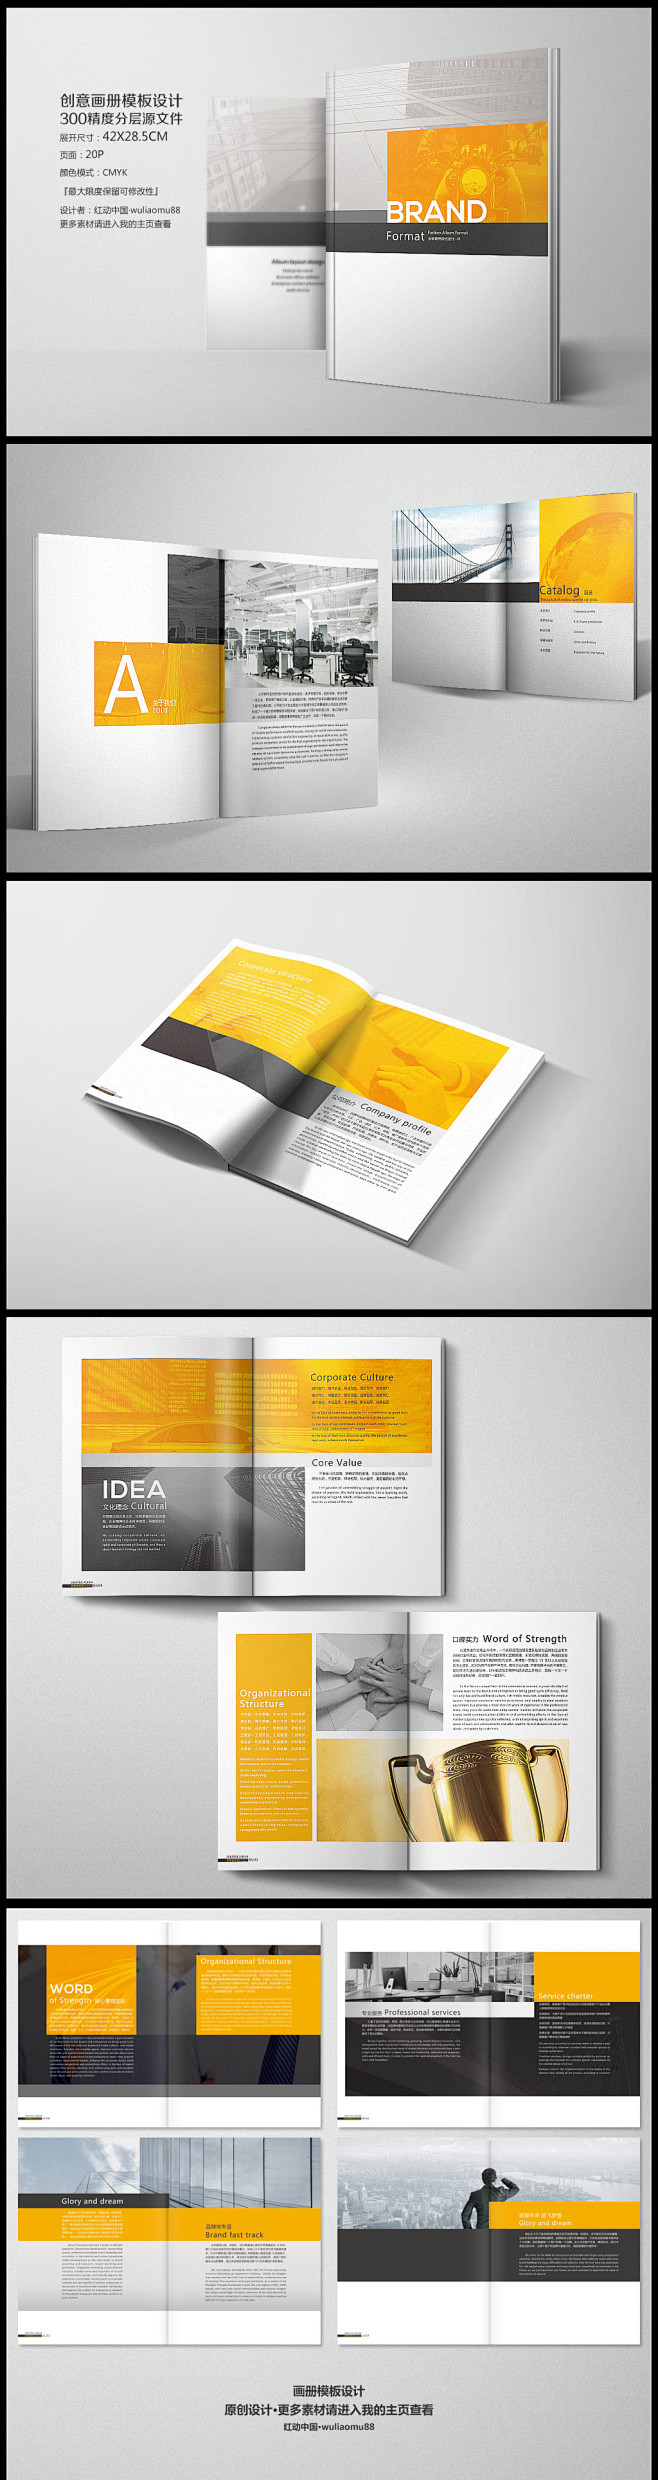 创意画册 画册模板 画册设计 企业画册 ...